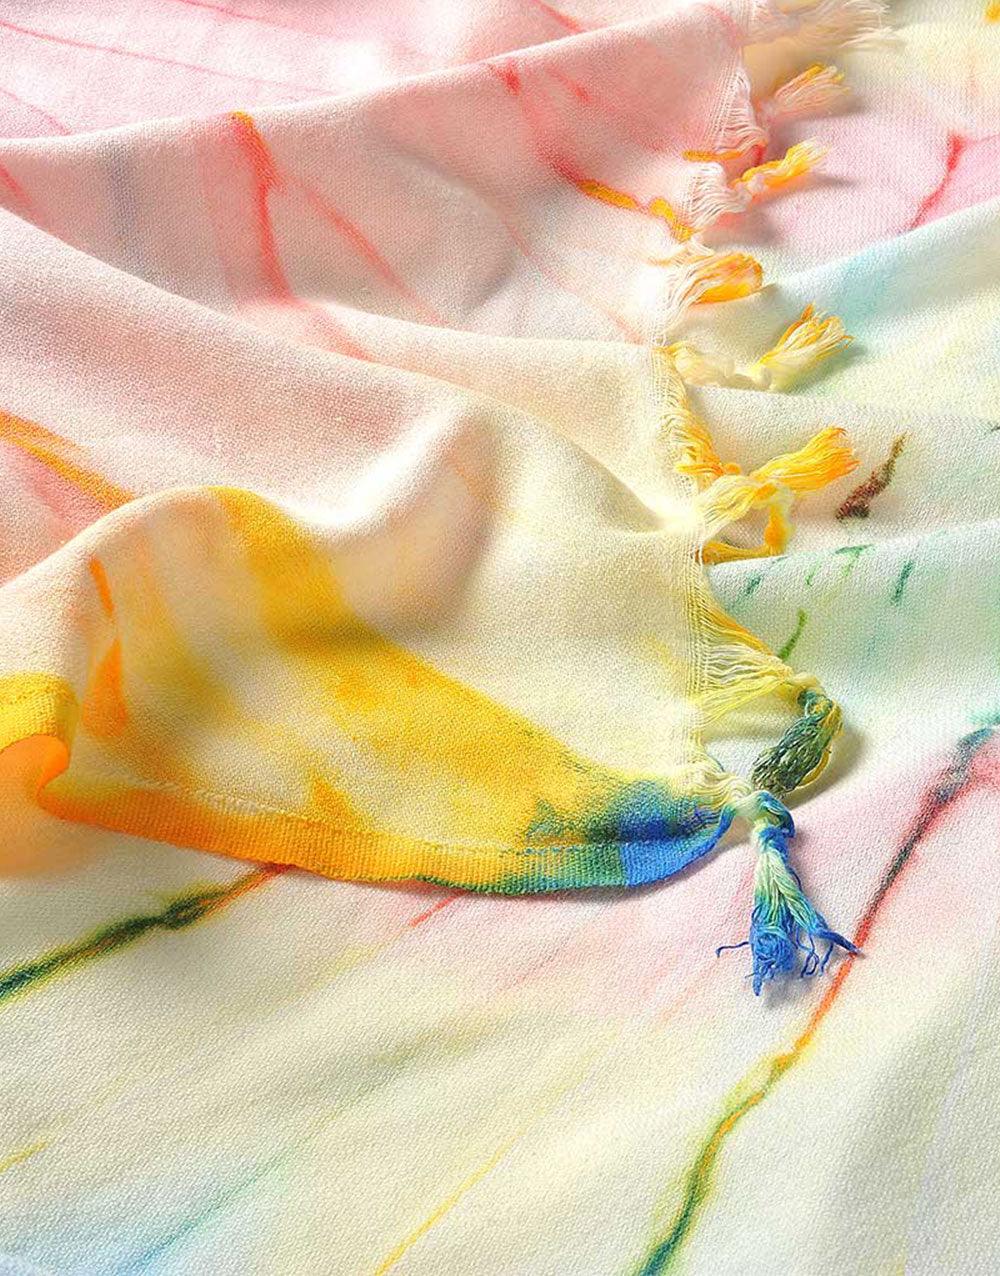 Cacala Turkish Blanket Throw Helezon Peshtemal Series 89"x78" 100% Cotton - Cacala